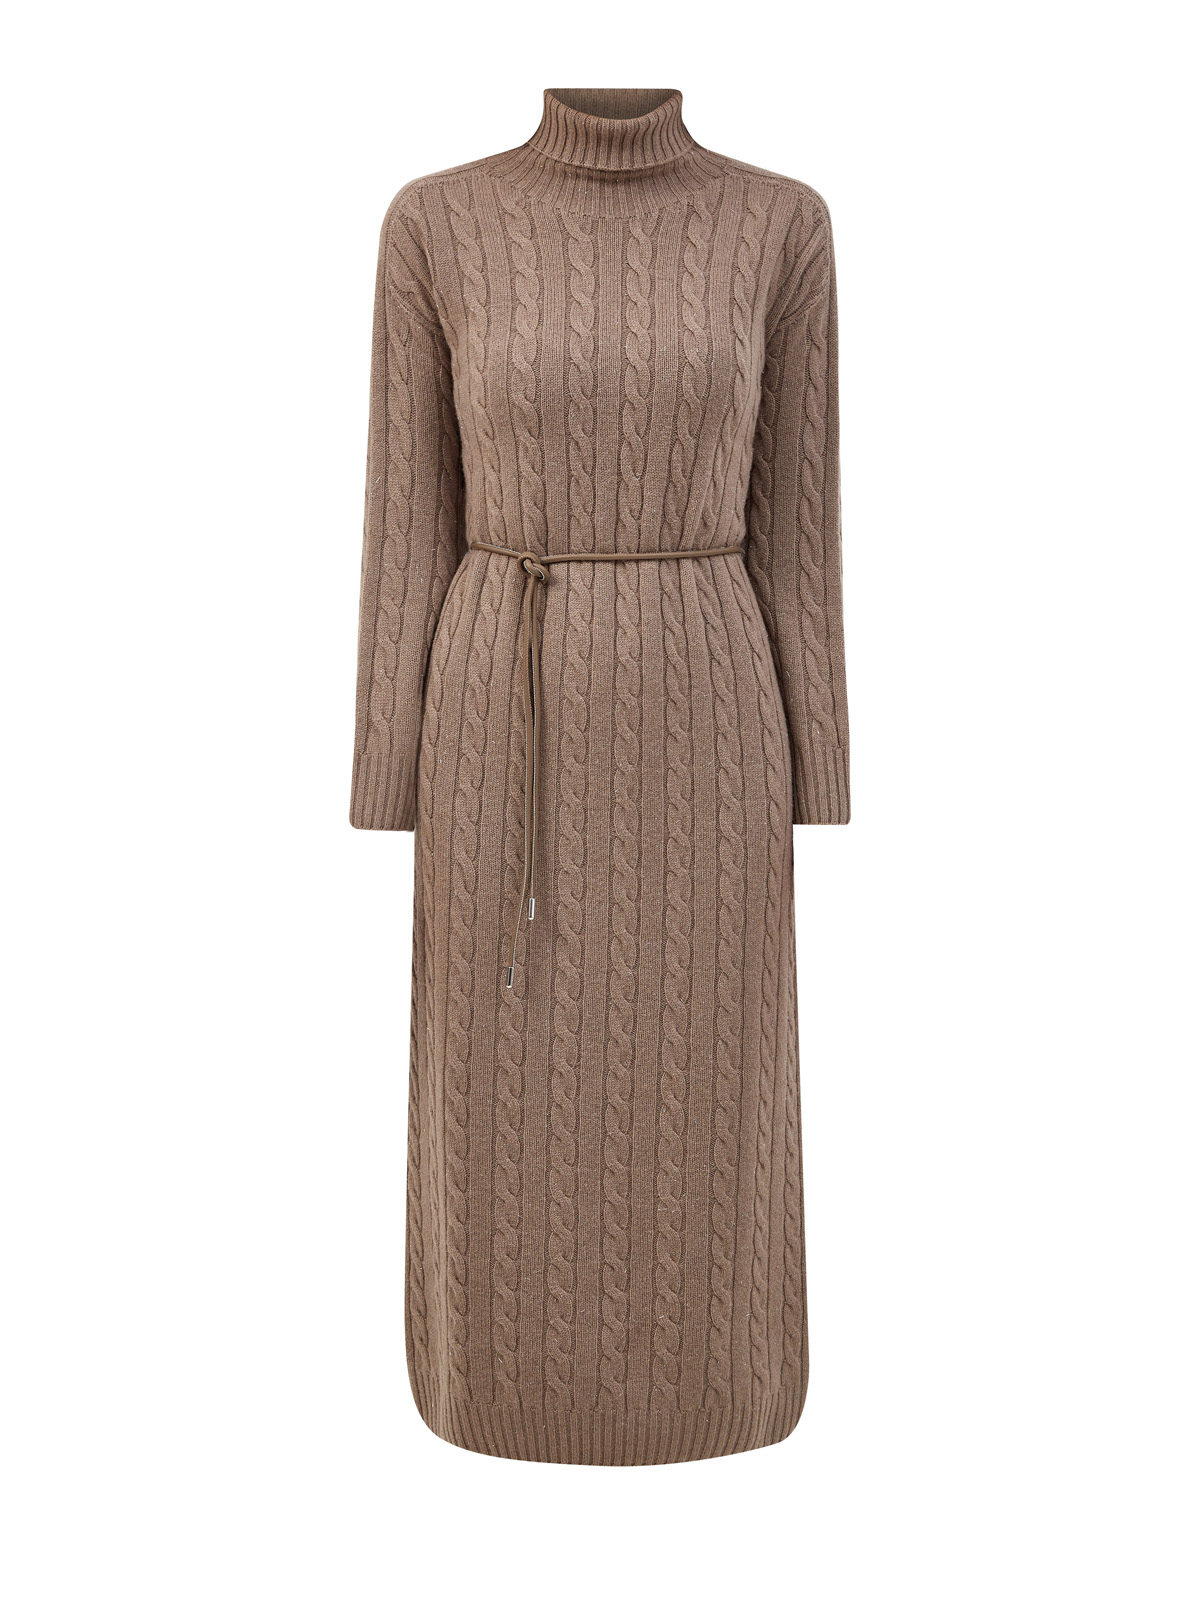 Платье из шерсти, шелка и кашемира с нитью ламе и поясом PESERICO, цвет коричневый, размер 40;42